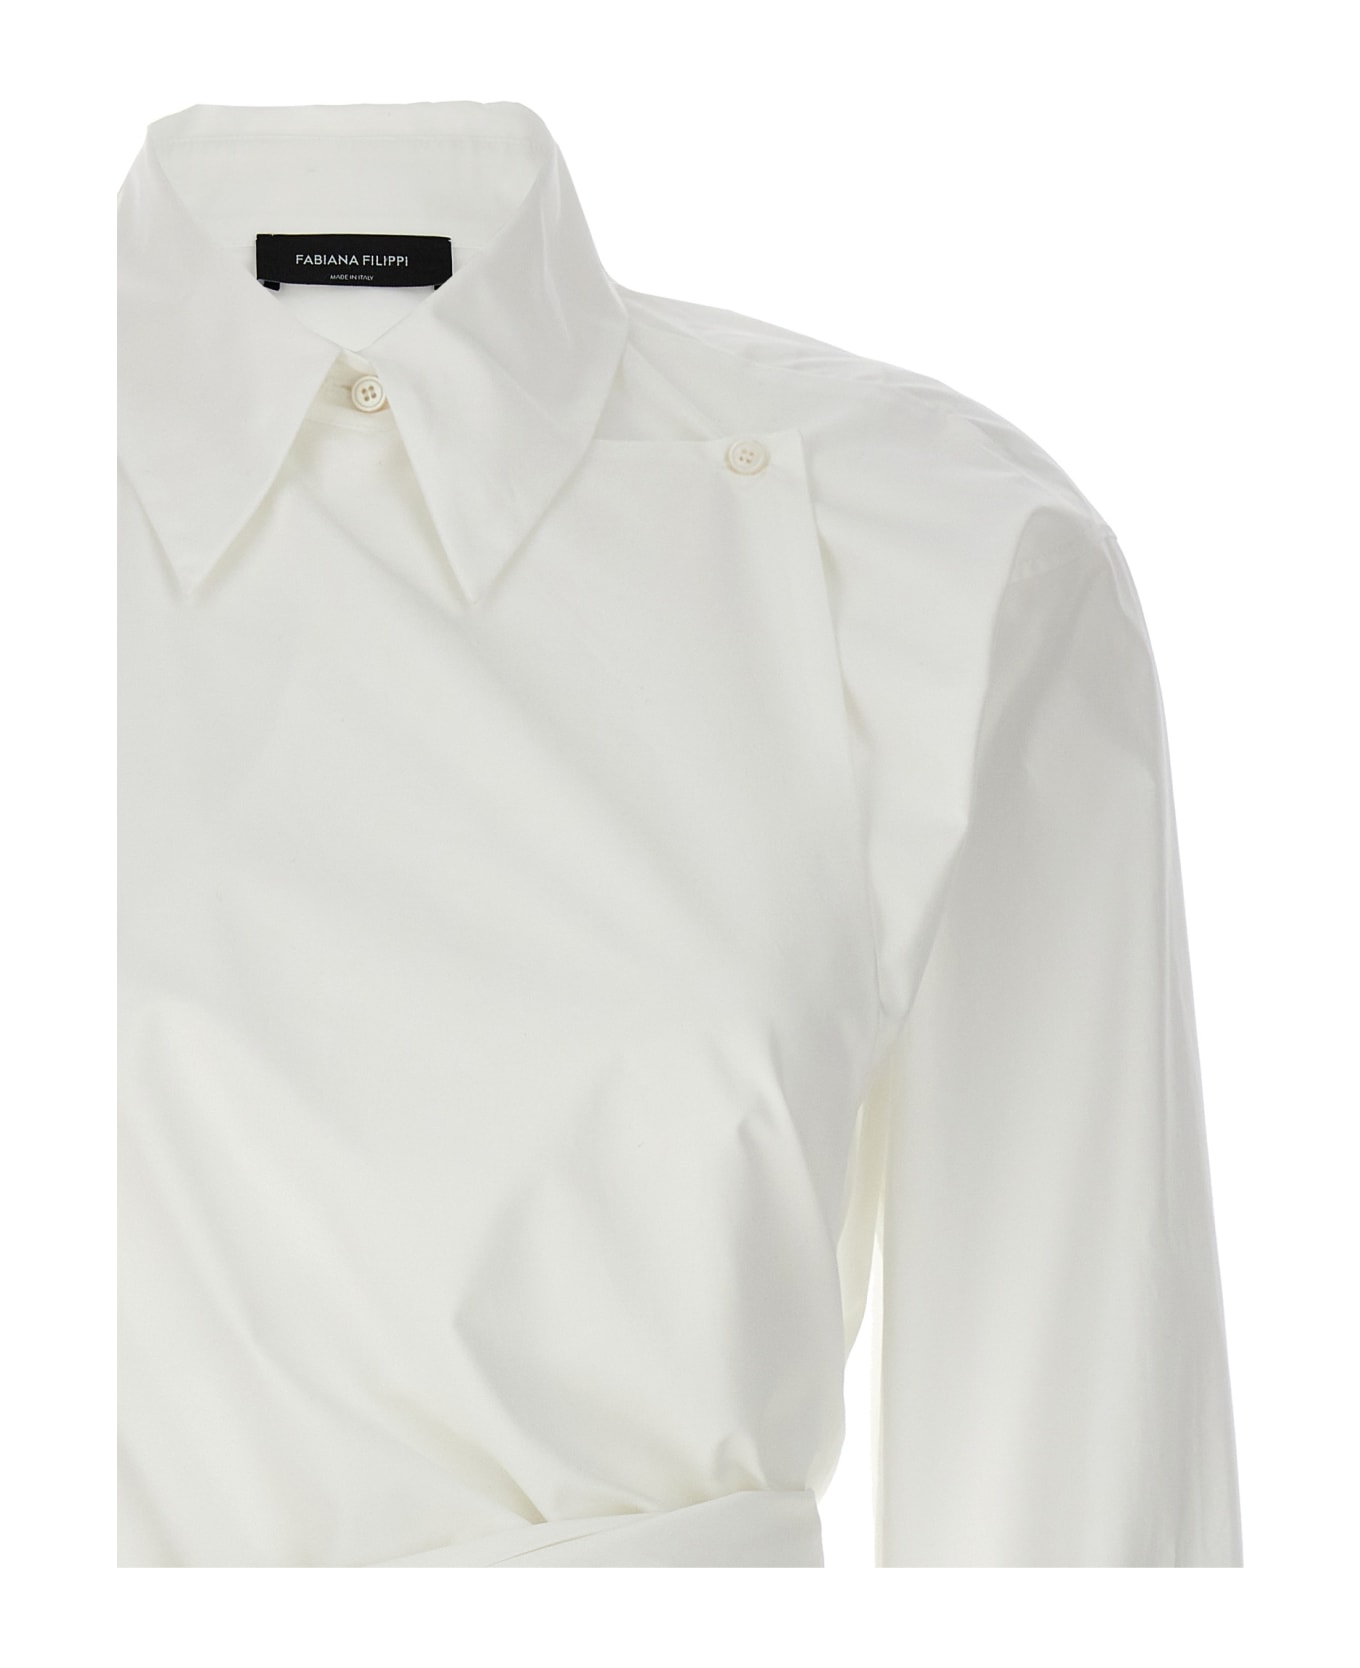 Fabiana Filippi Knot Shirt - White